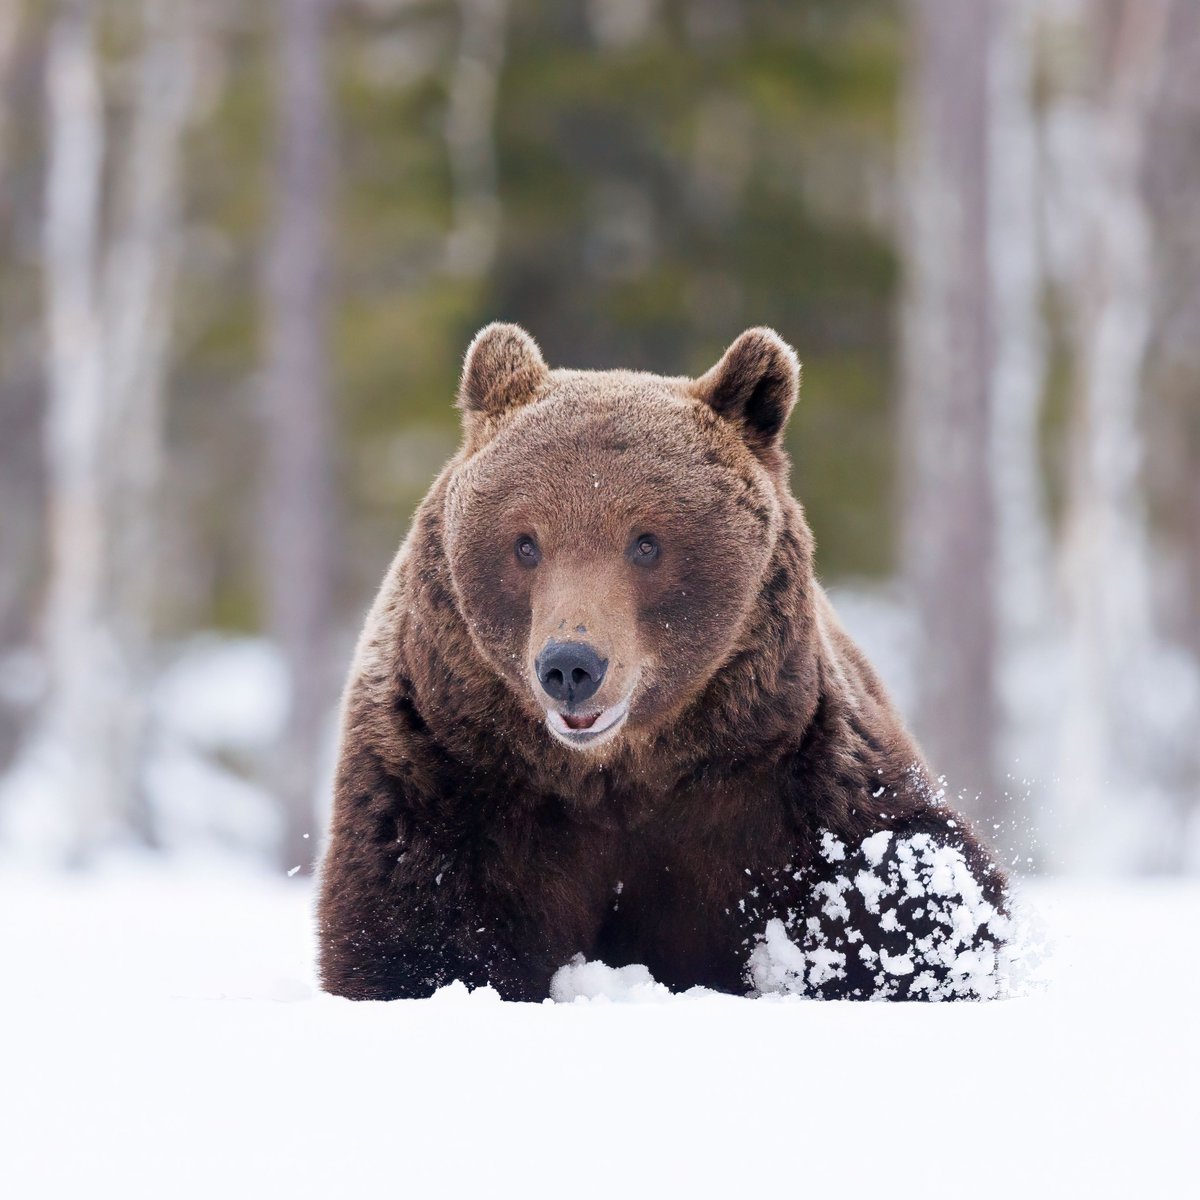 Suojasää huhtikuussa karhua vielä upottaa syvässä lumessa liikkuessa. #April24 #Bears #snow